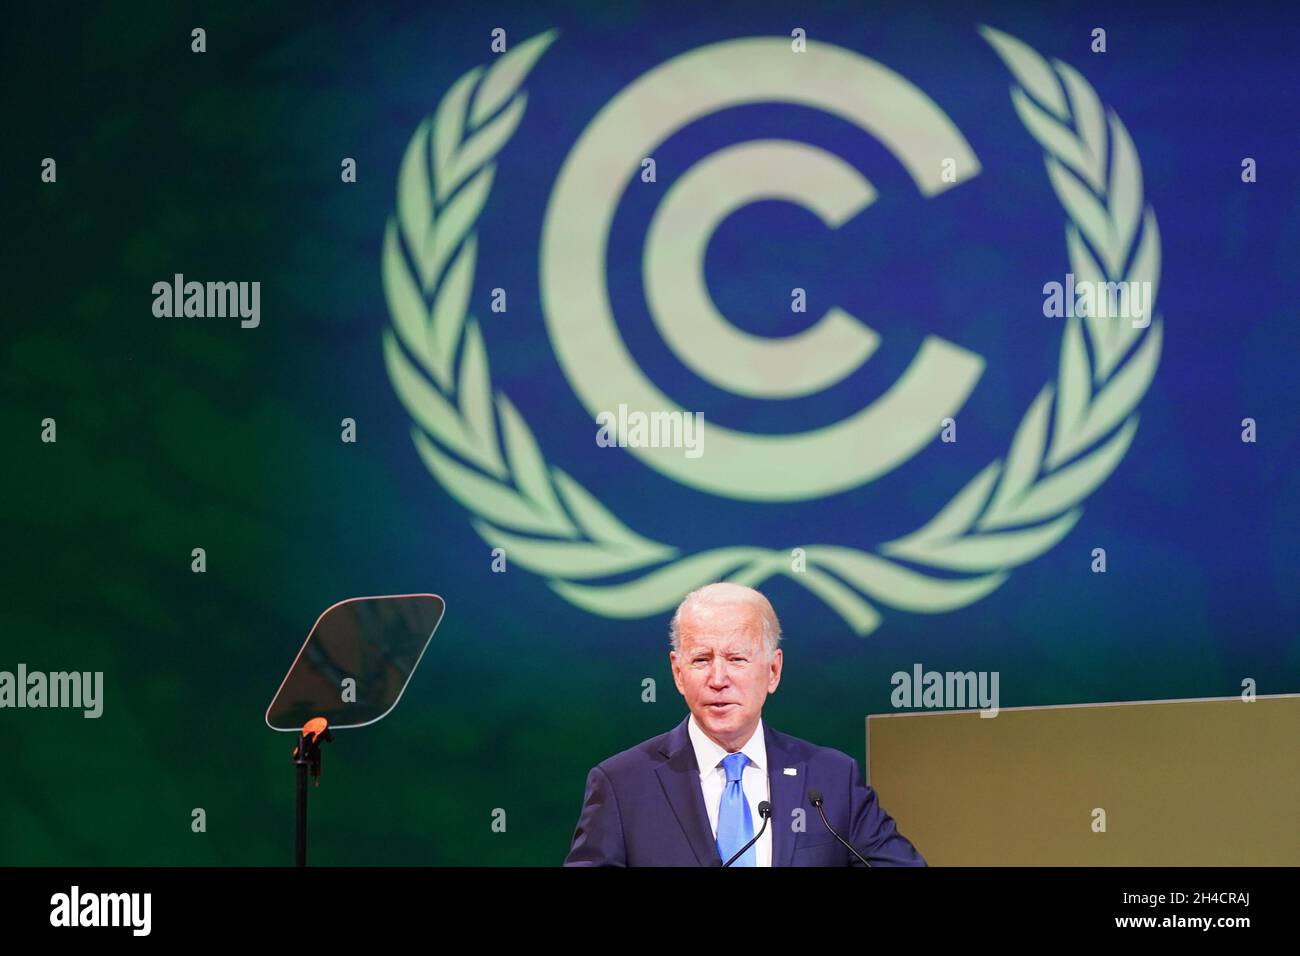 El Presidente DE LOS ESTADOS UNIDOS, Joe Biden, habla en el evento Leaders' Action on Forests and Land-use durante la cumbre de Cop26 en el Scottish Event Campus (SEC) en Glasgow. Fecha de la foto: Martes 2 de noviembre de 2021. Foto de stock